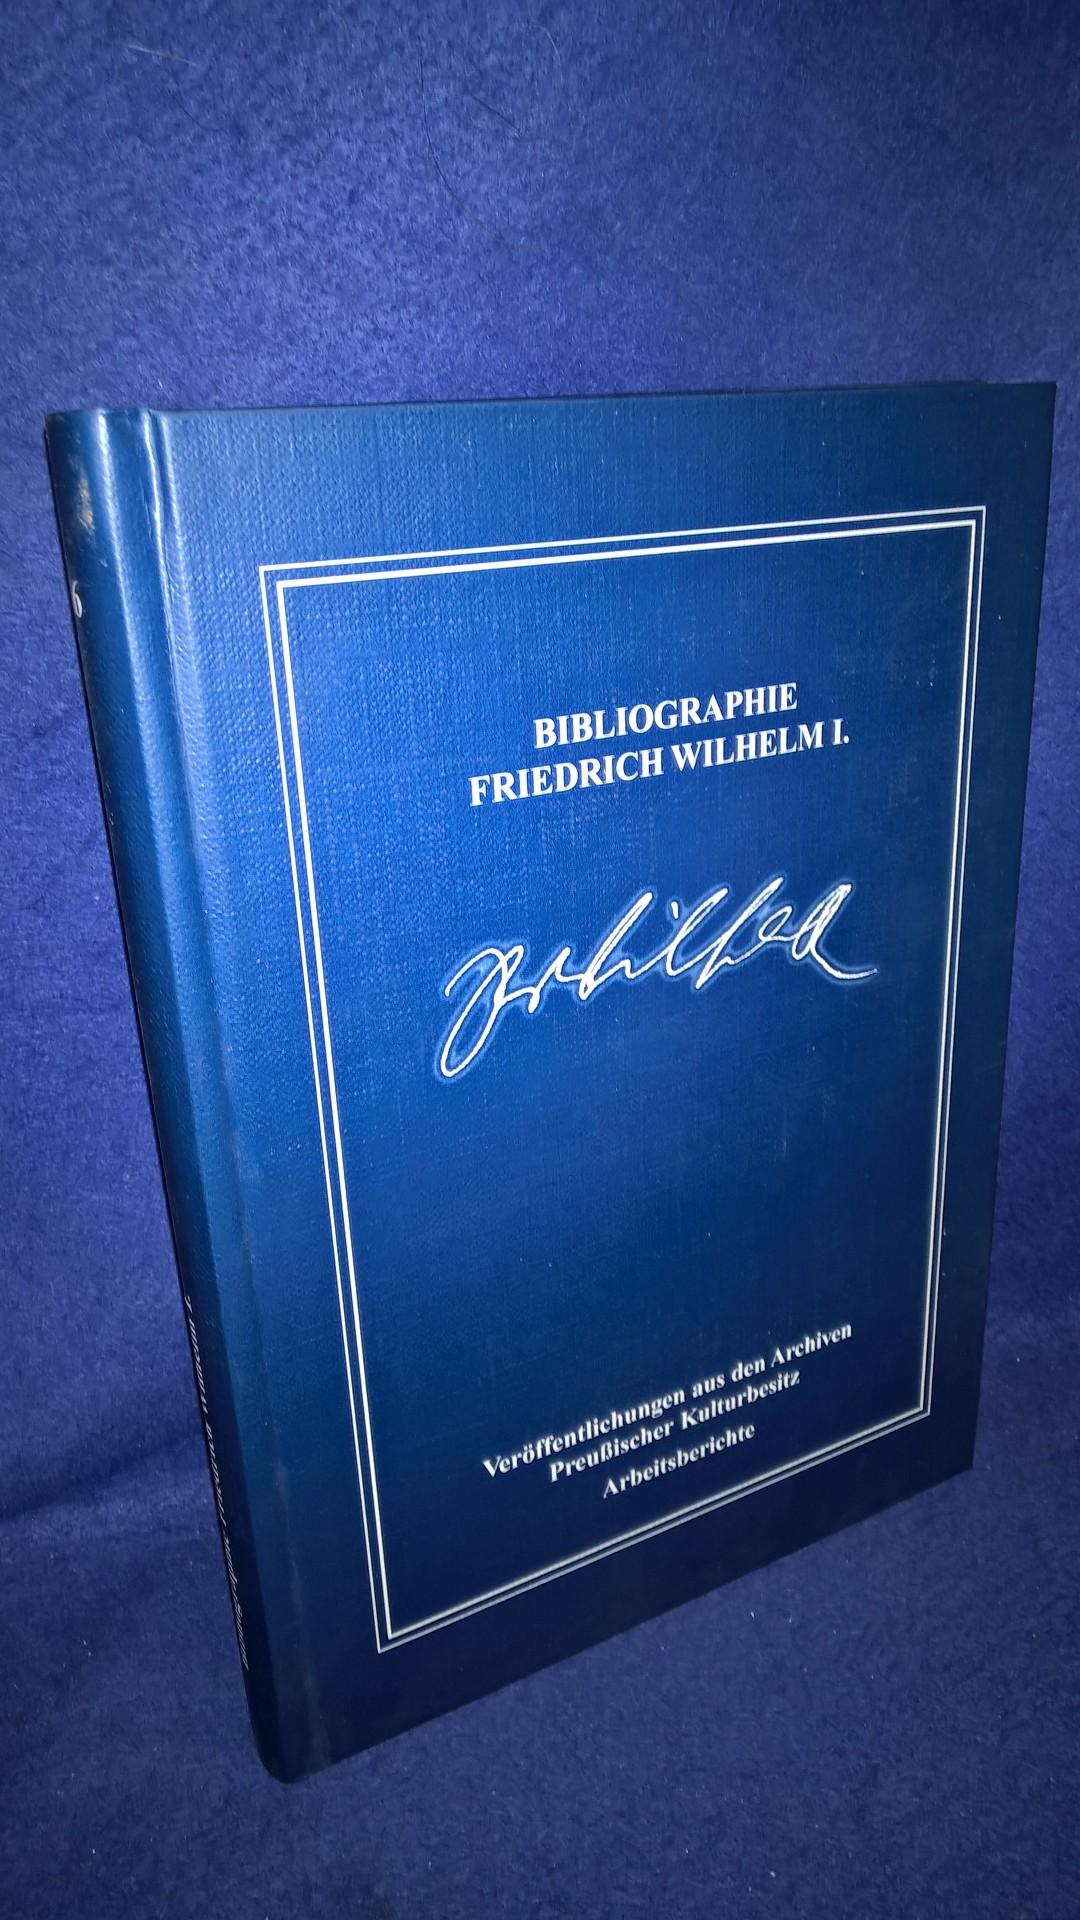 Bibliographie Friedrich Wilhelm I. - Schrifttum von 1688 bis 2005.